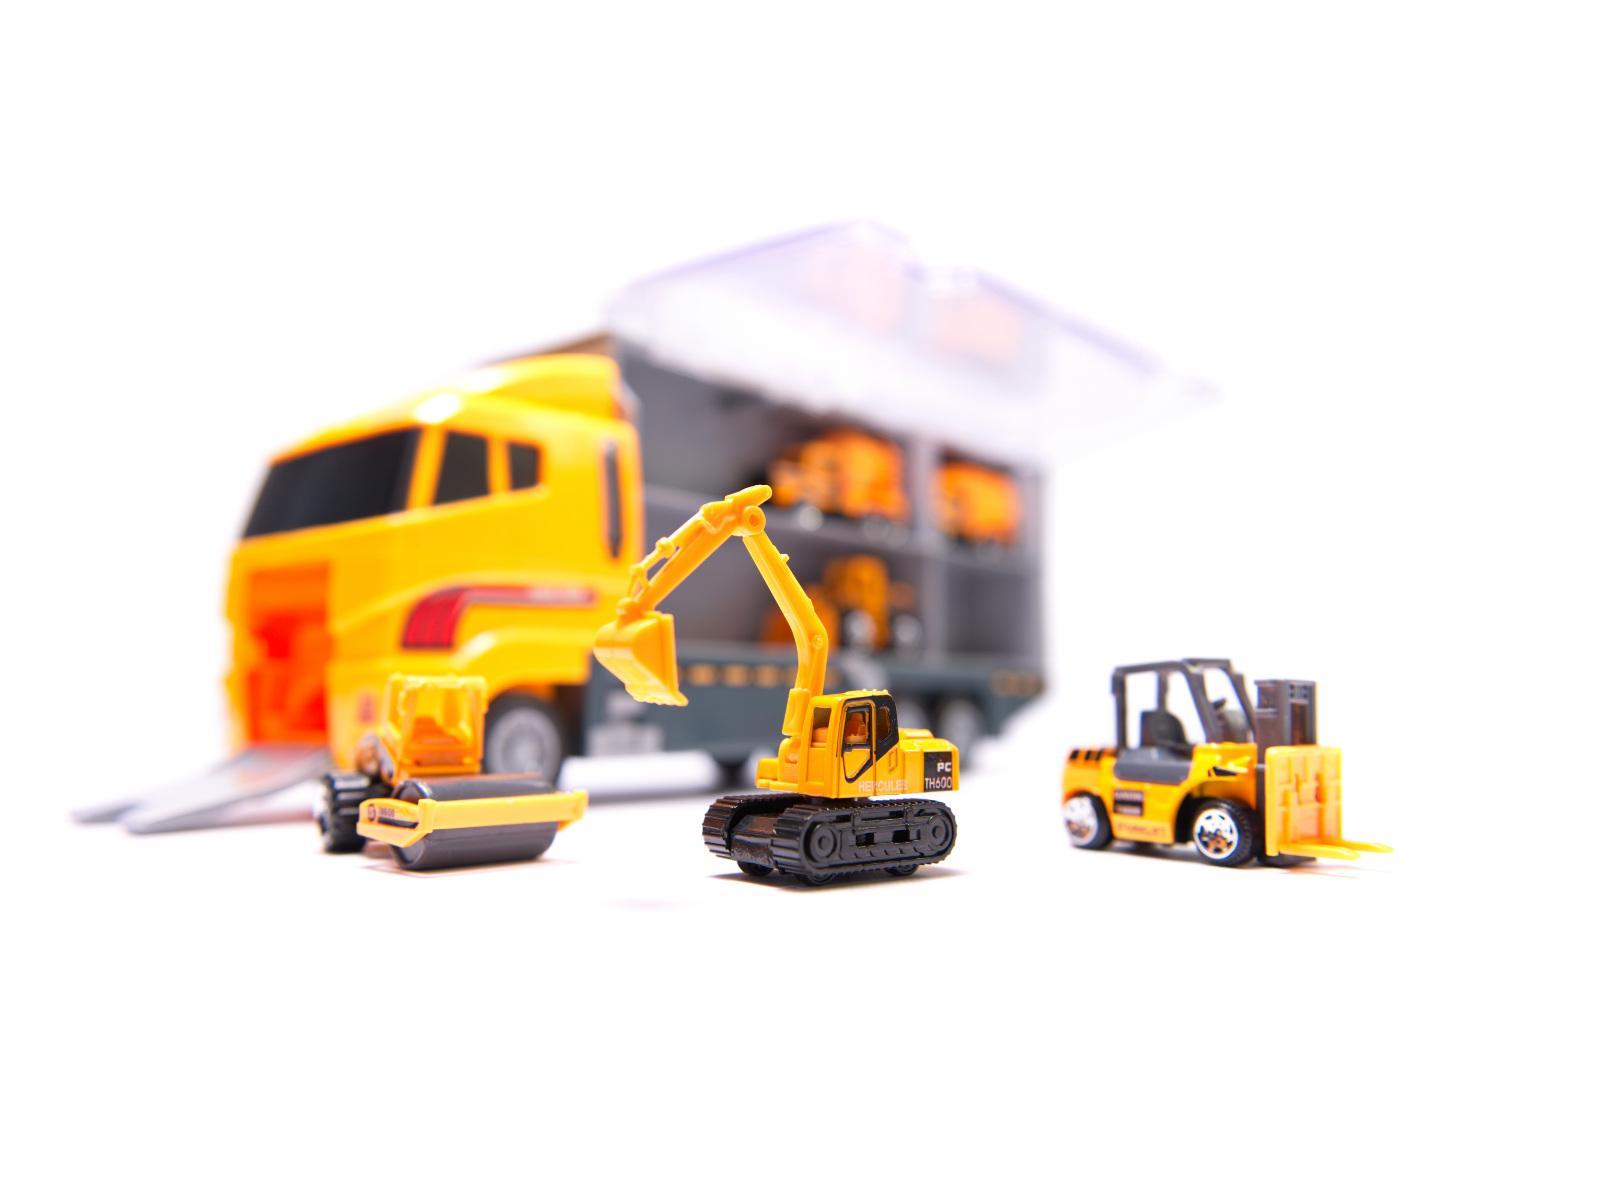 Transporter ciężarówka TIR wyrzutnia + metalowe auta maszyny budowlane zabawka dla dzieci 15x10x36cm nr. 15